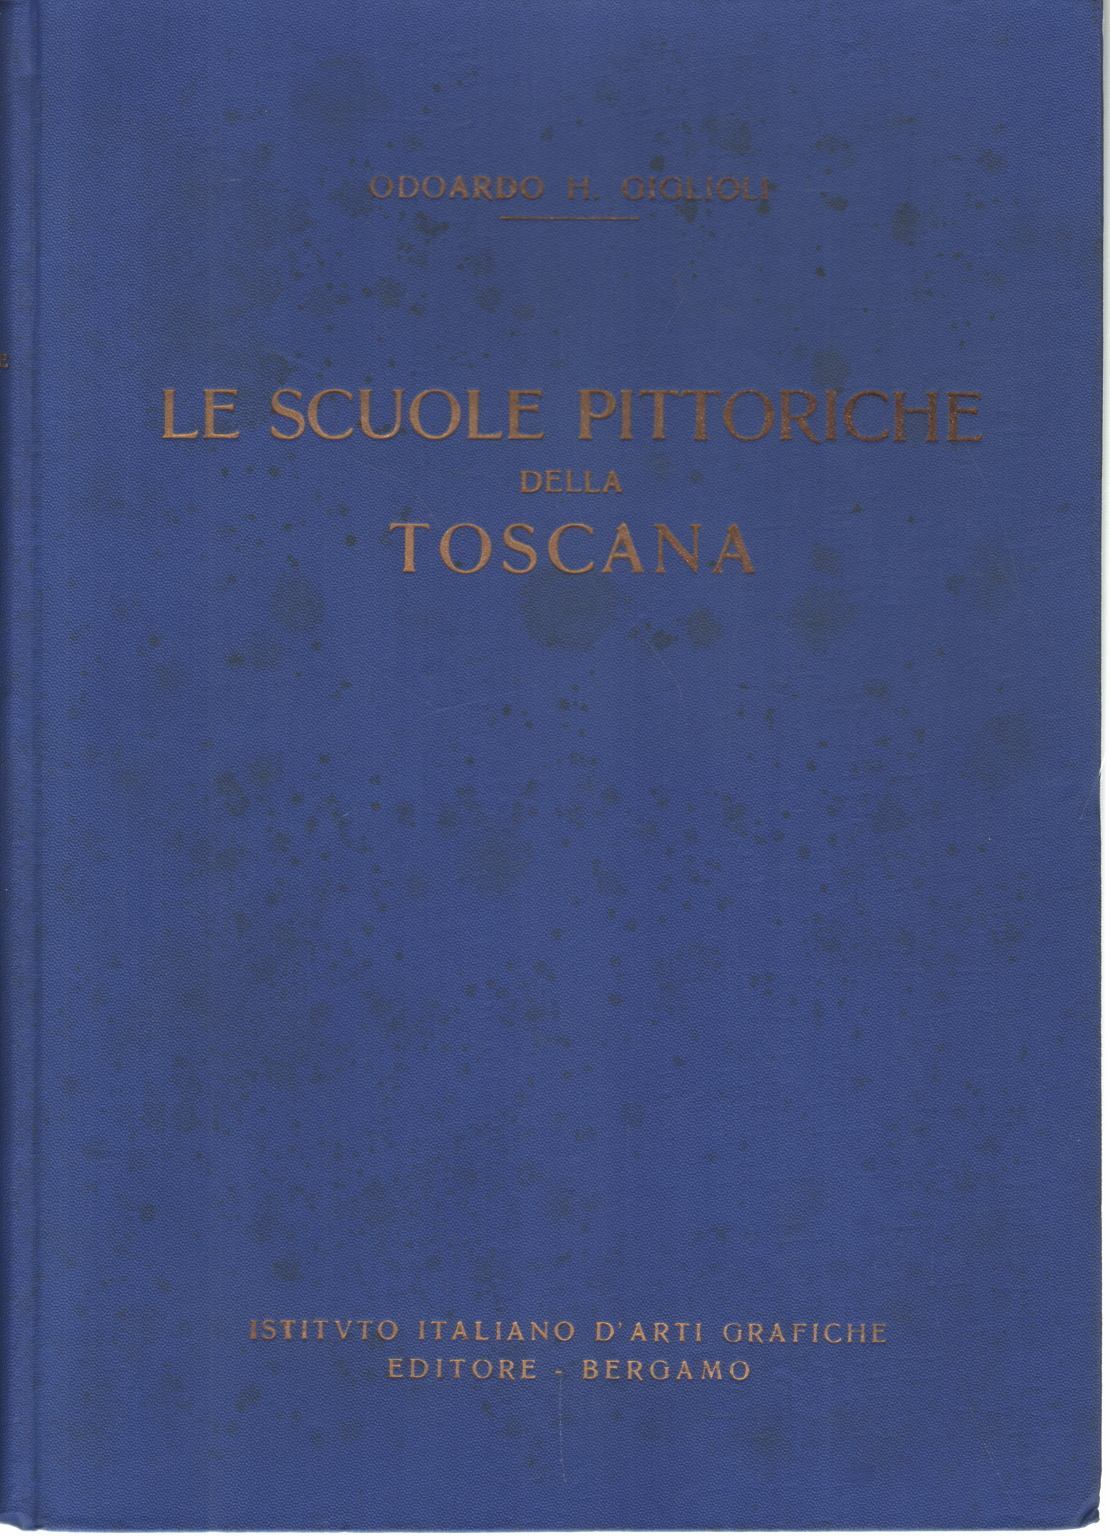 Le scuole pittoriche della Toscana (Sec. XIV - XV), Odoardo H. Giglioli